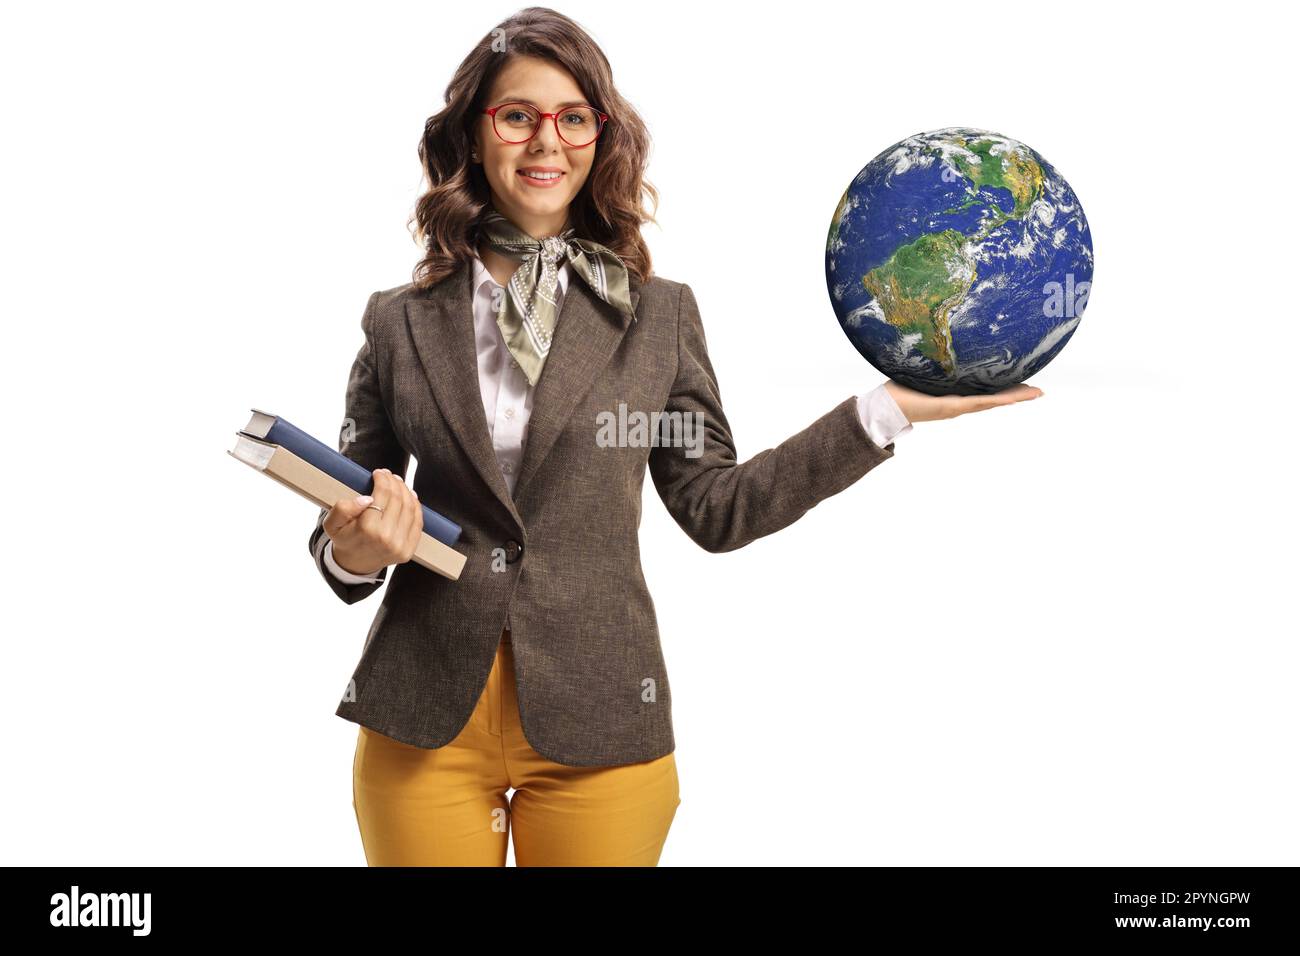 Giovane donna che tiene libri con una mano e il pianeta terra dall'altra parte isolato su sfondo hite Foto Stock